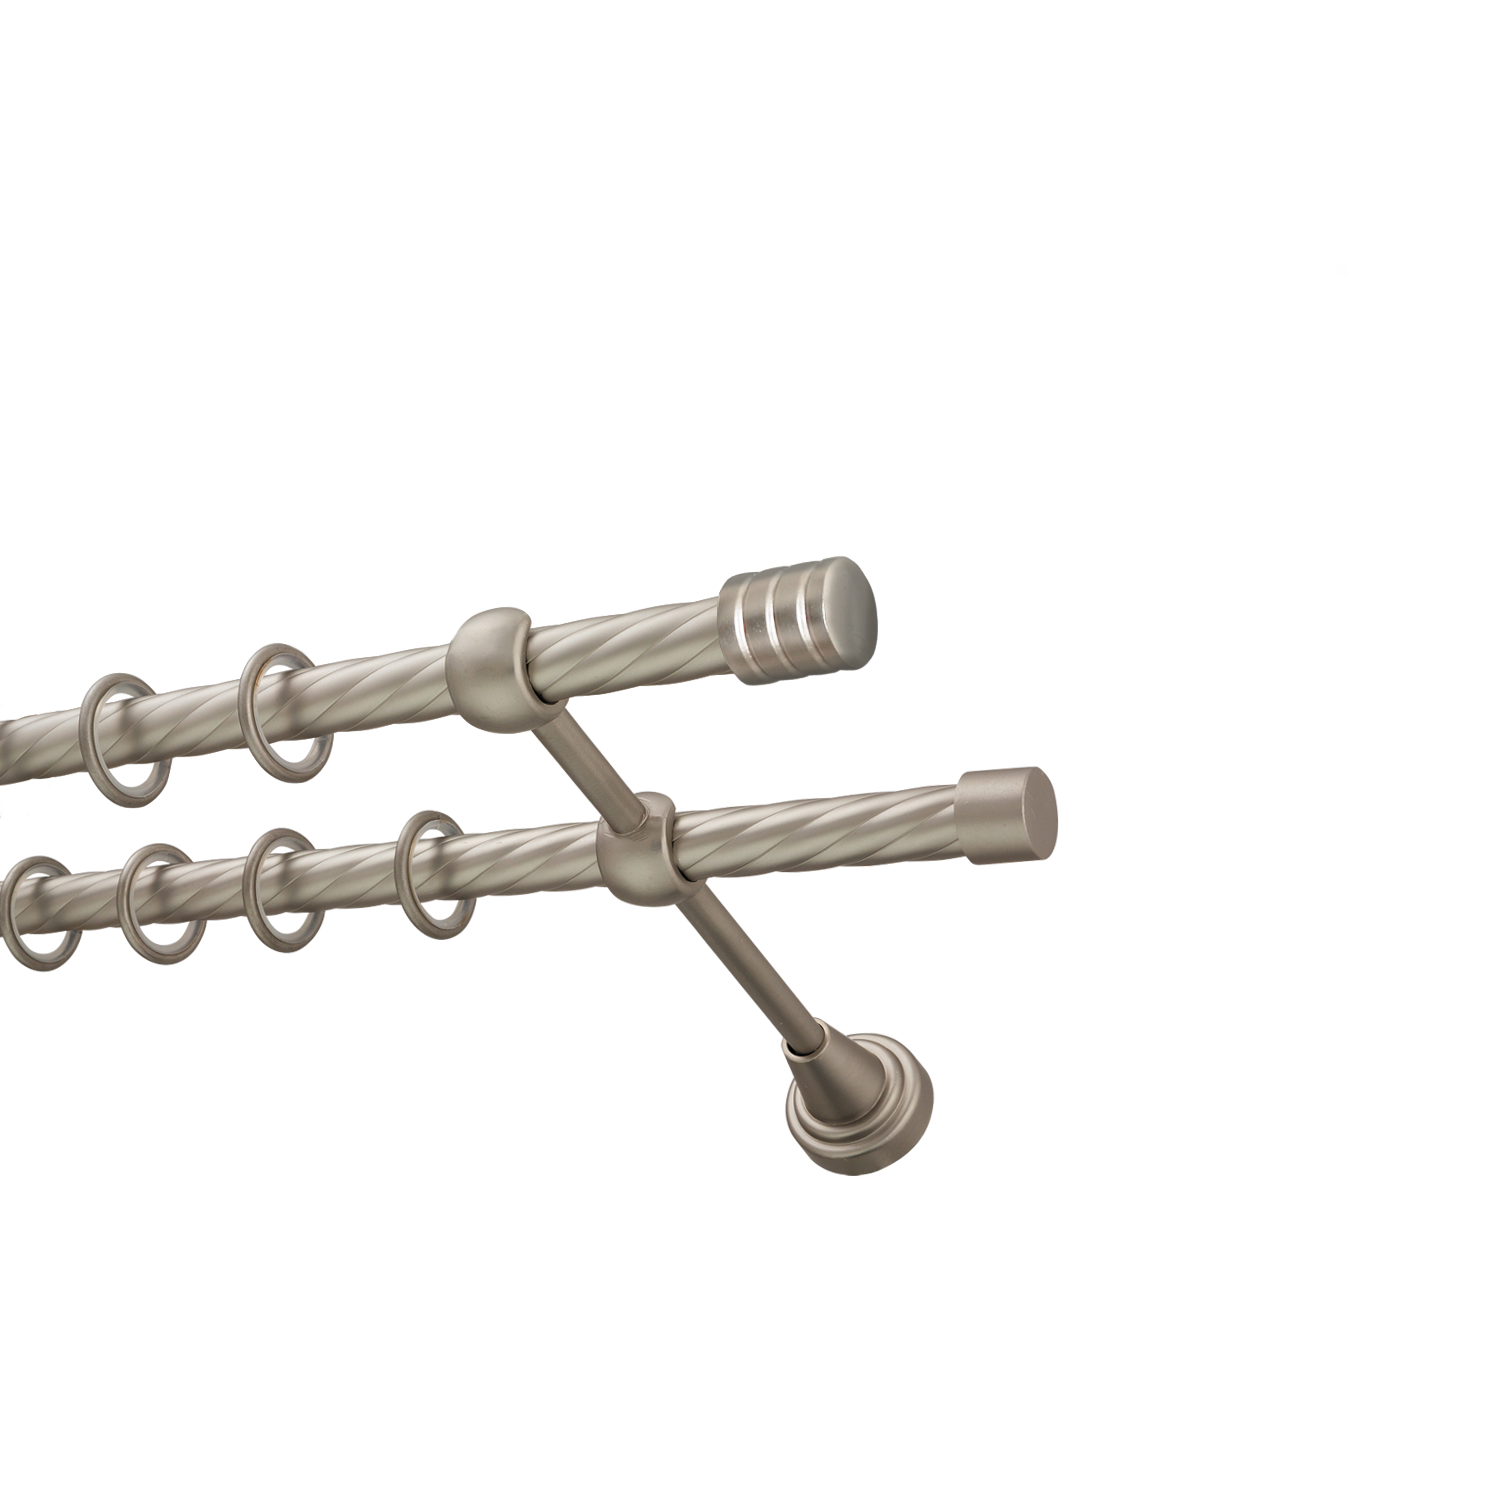 Металлический карниз для штор Подиум, двухрядный 16/16 мм, сталь, витая штанга, длина 160 см - фото Wikidecor.ru